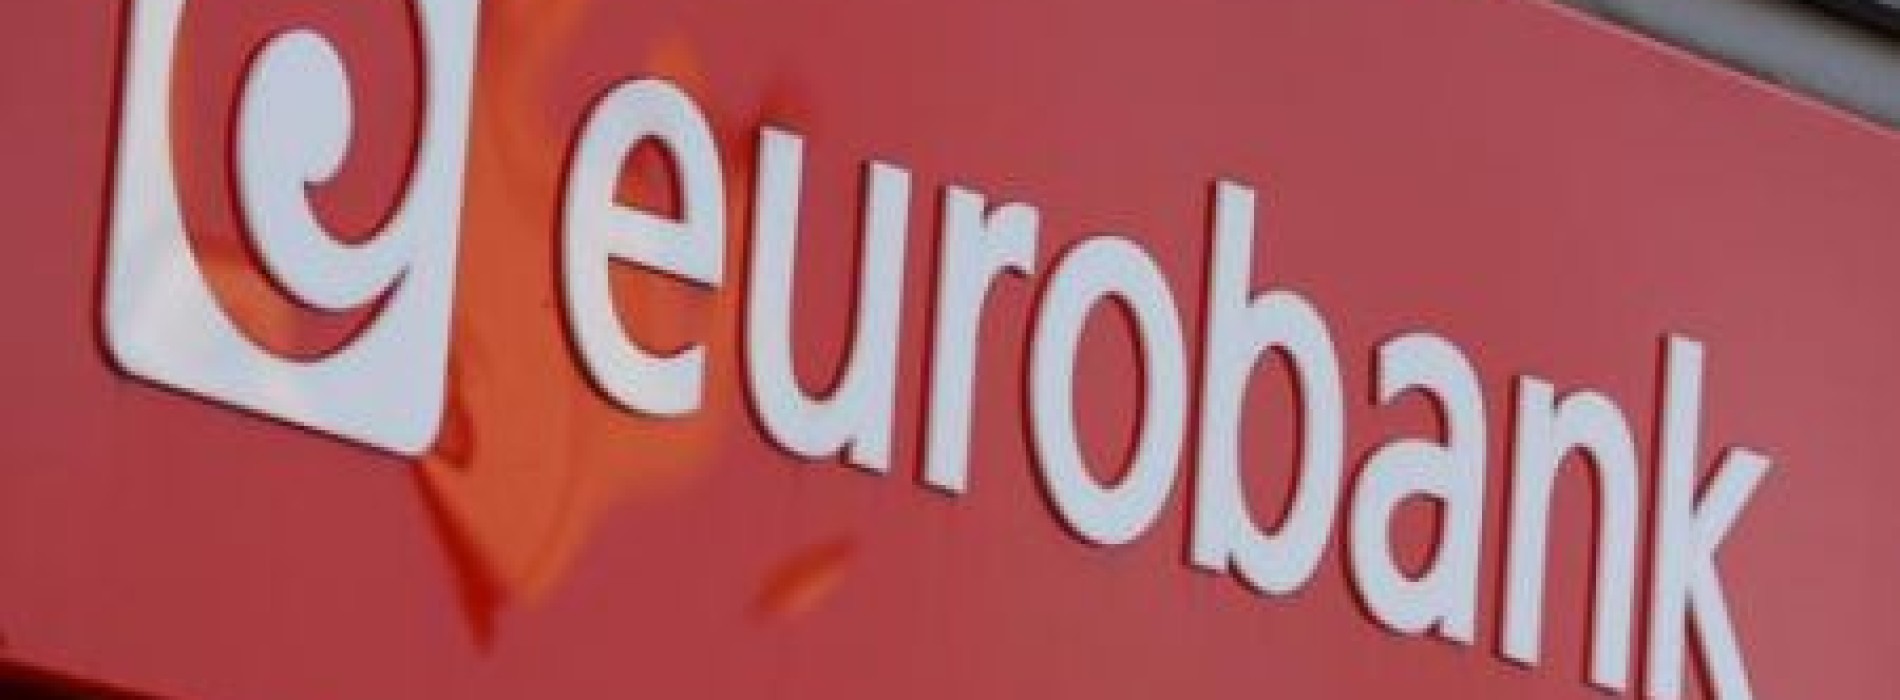 eurobank rozwija się mobilnie – bankowość w telefonie teraz także dla systemu Windows